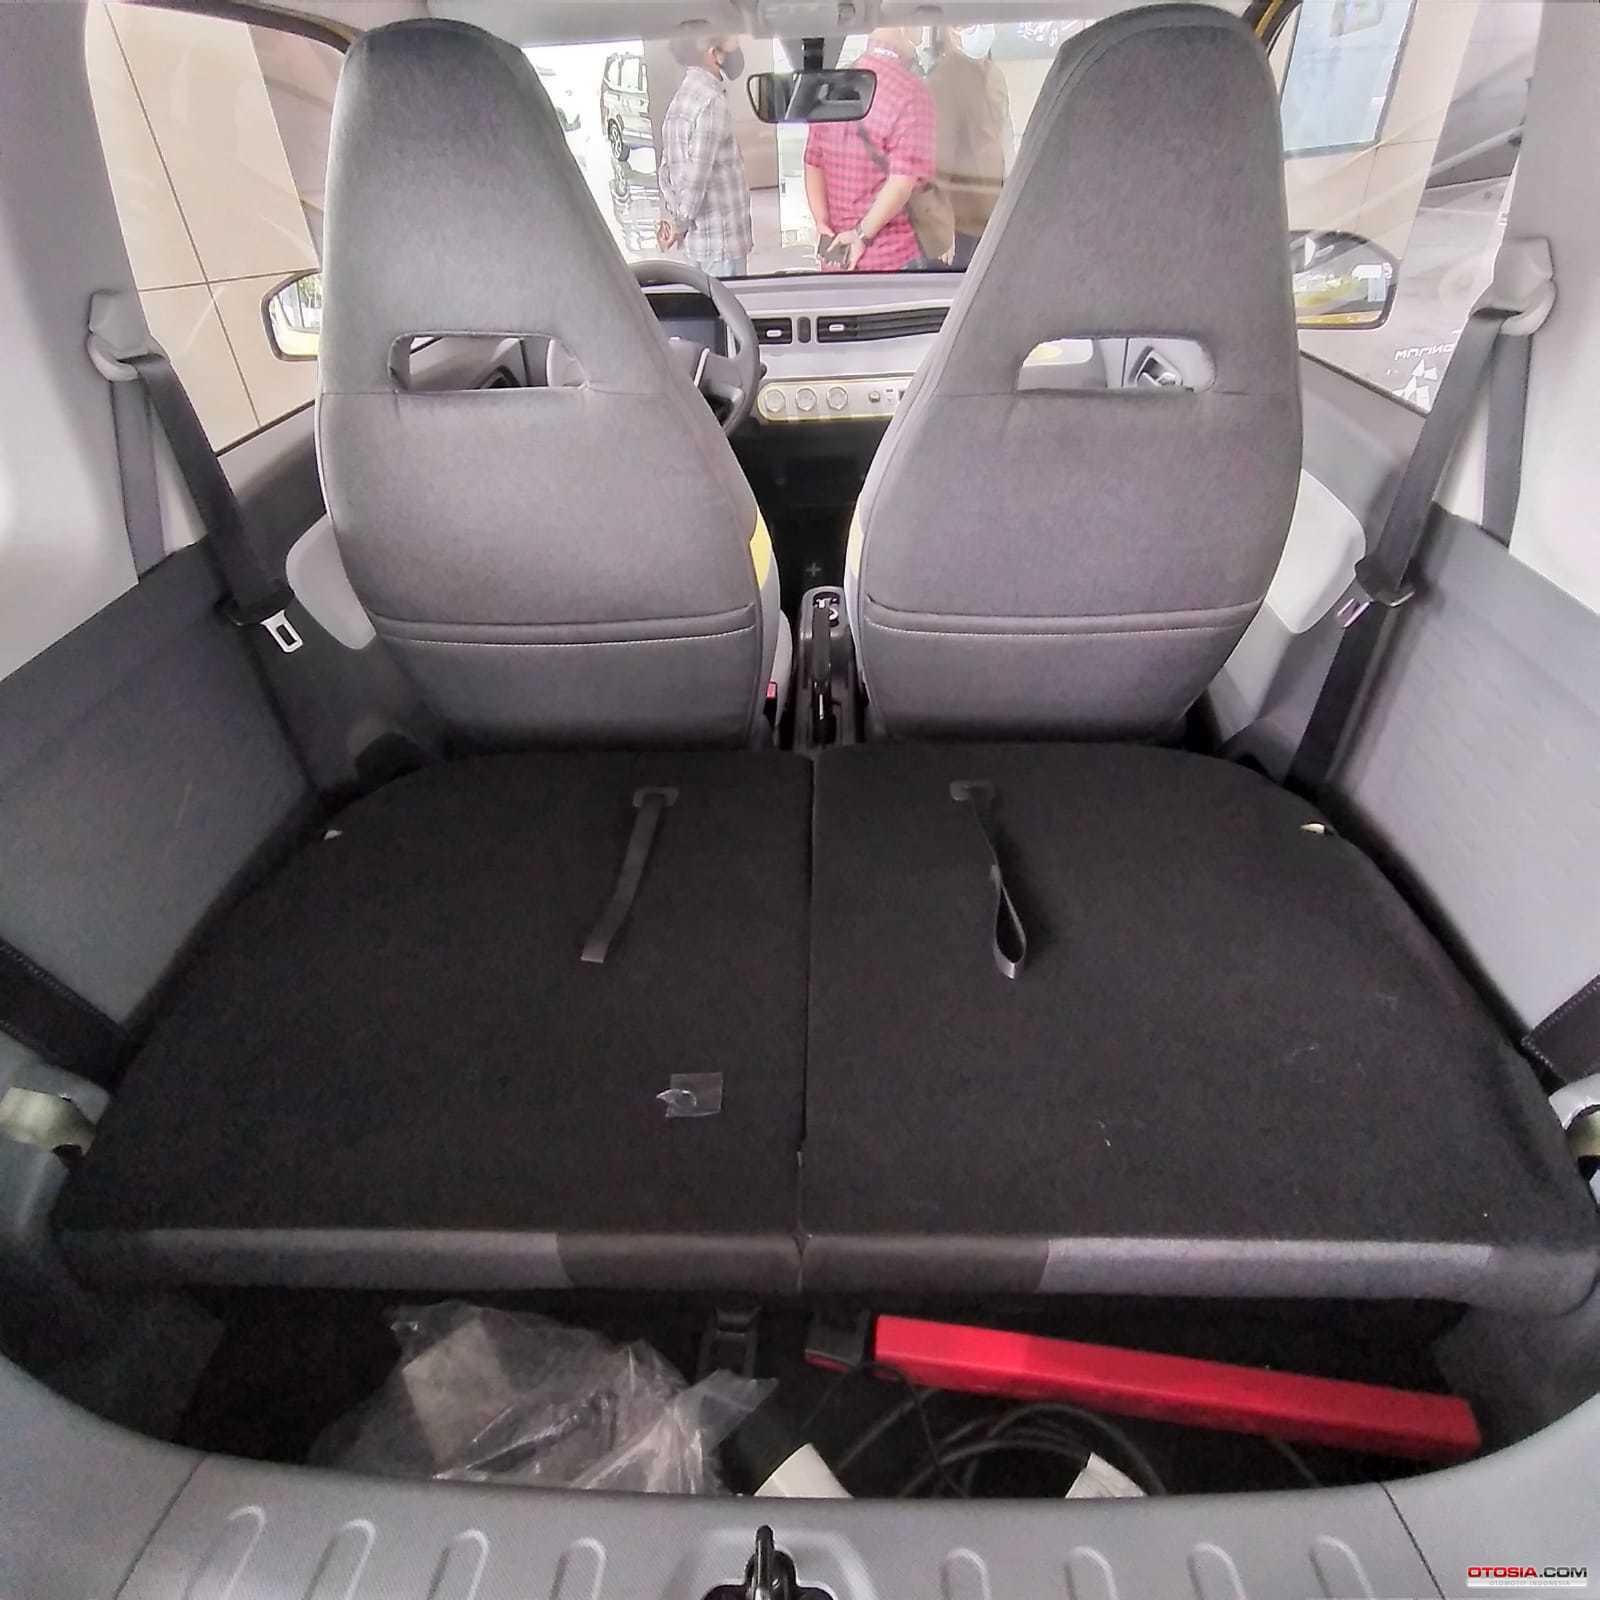 Kursi belakang Wuling Mini EV bisa dilipat untuk meningkatkan kapasitas bagasi (Otosia.com/Nazarudin Ray)